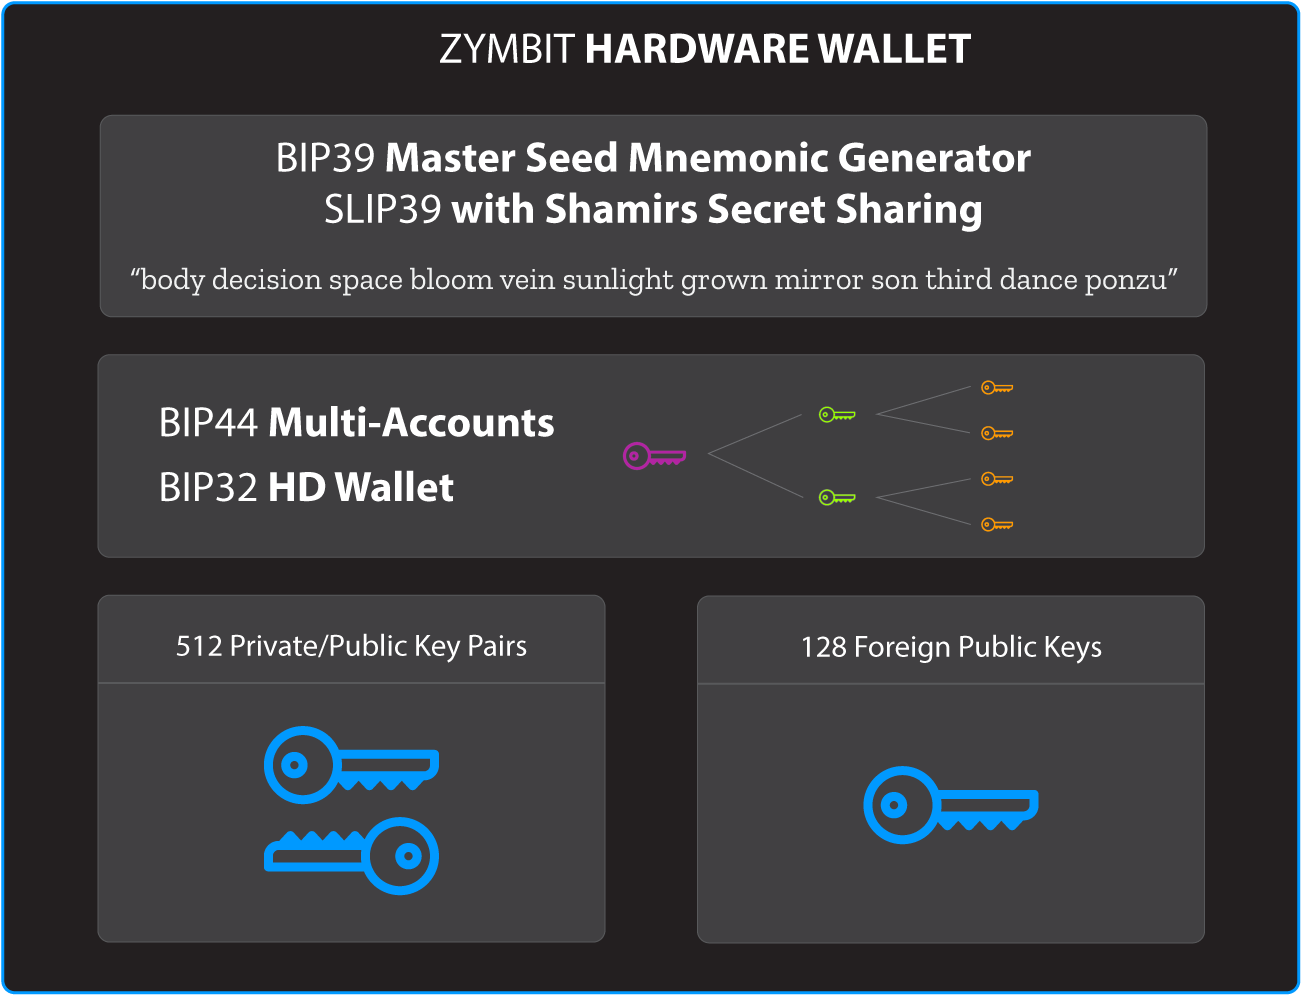 Zymbit hardware wallet architecture